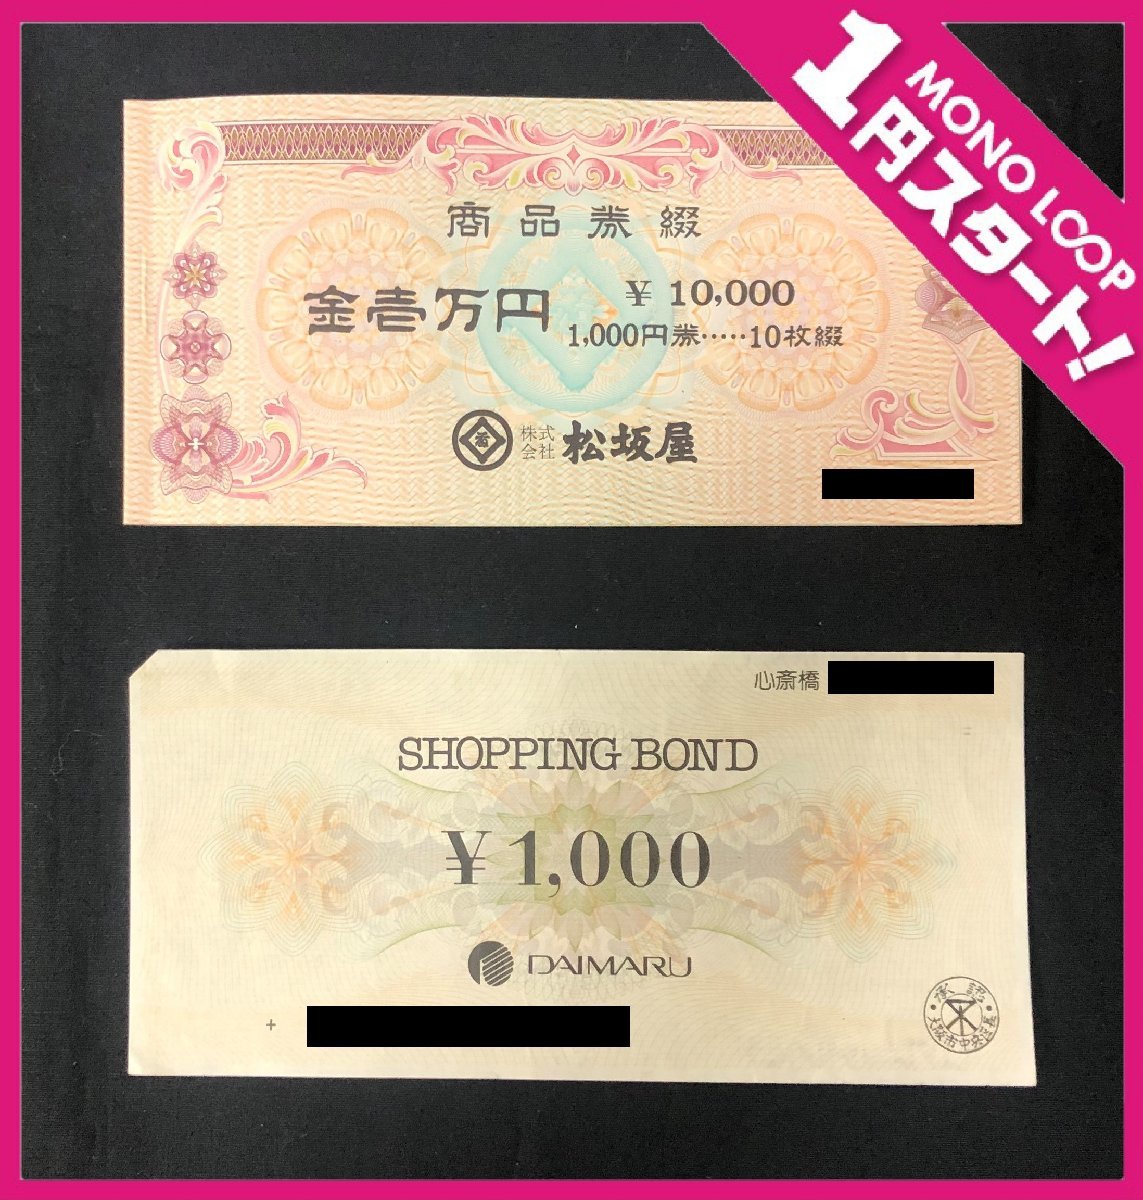 大丸商品券 110,000円分【旧デザイン】 | monsterdog.com.br